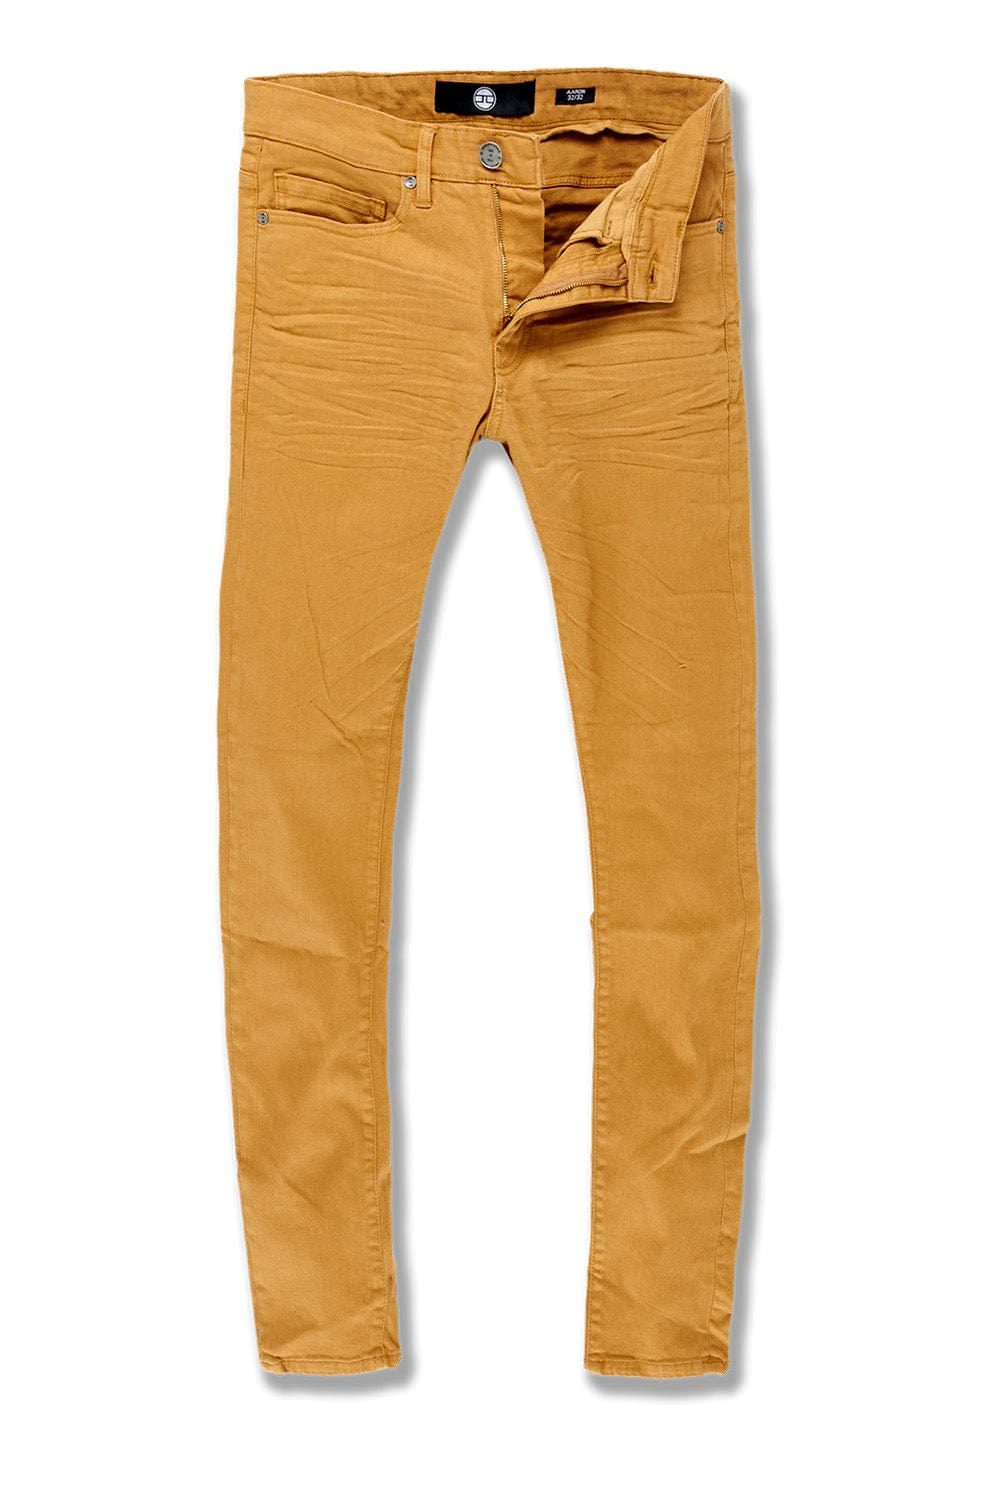 Jordan Craig Ross - Pure Tribeca Twill Pants (Exclusive Colors) Desert / 28/32